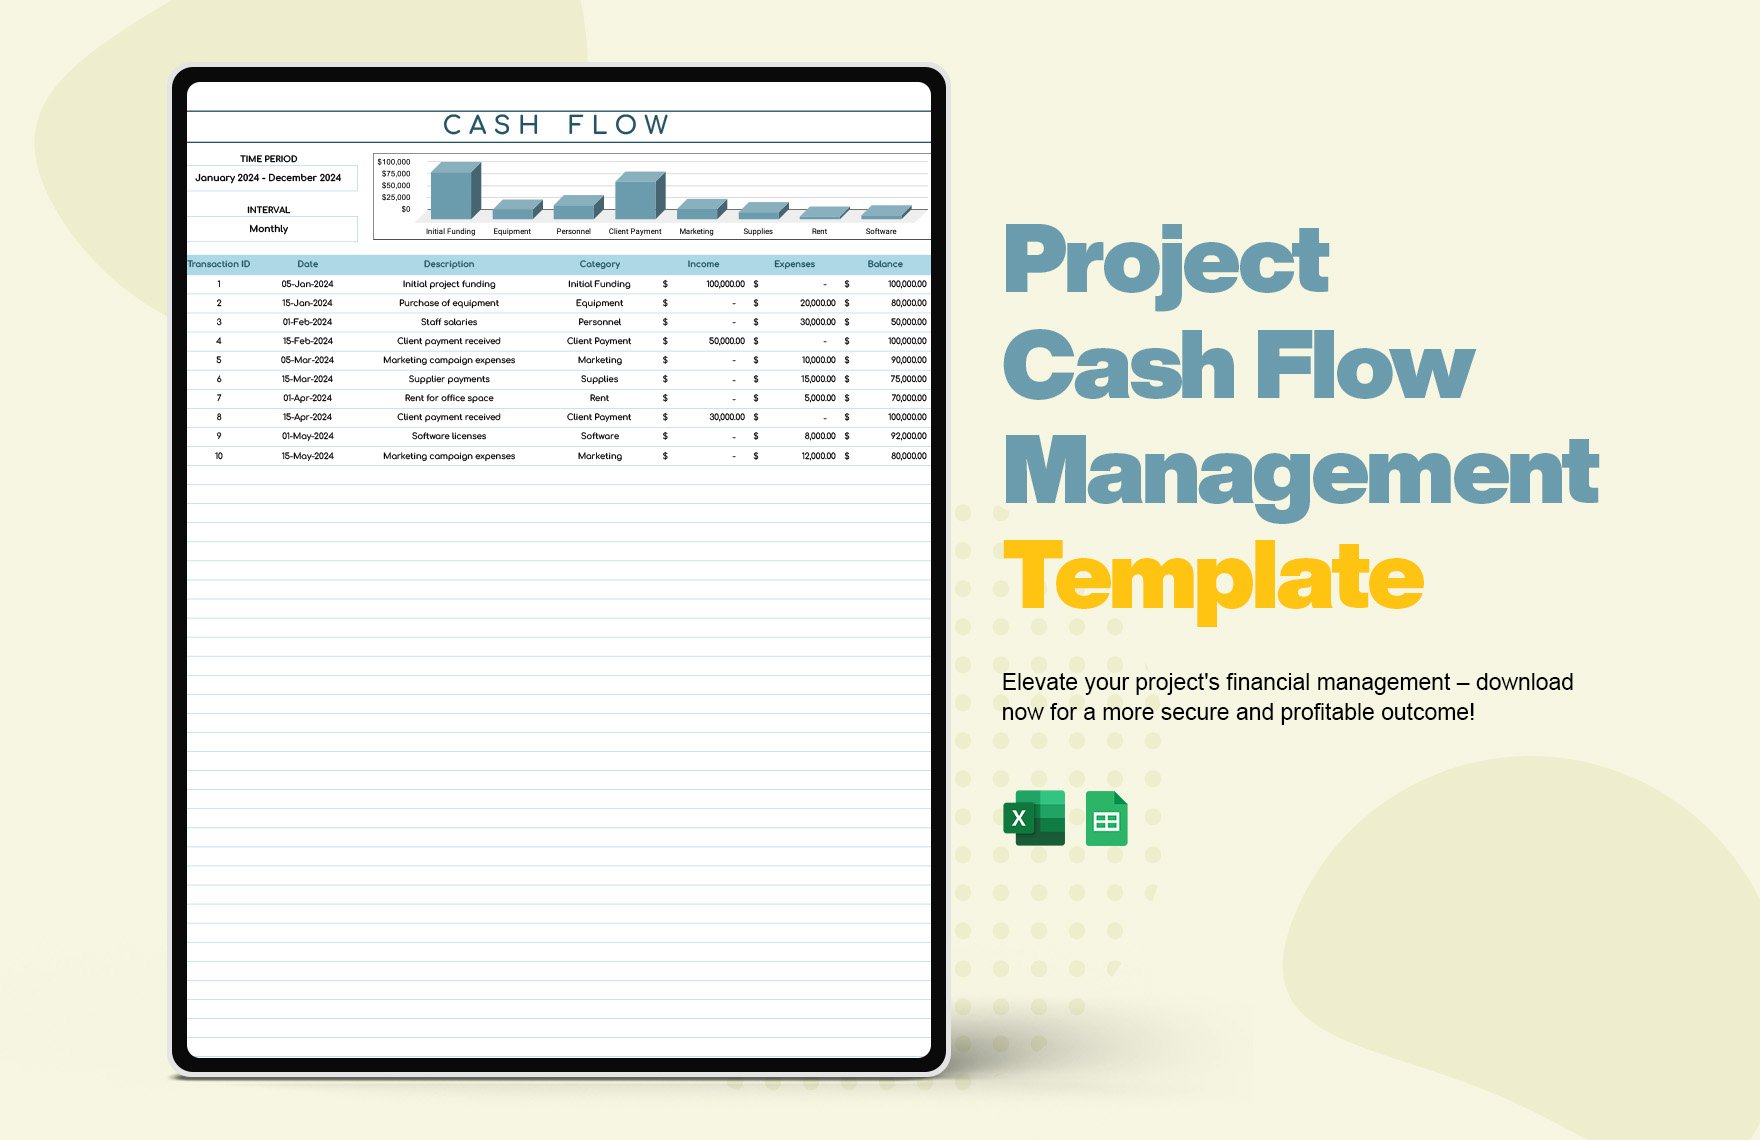 Project Cash Flow Management Template